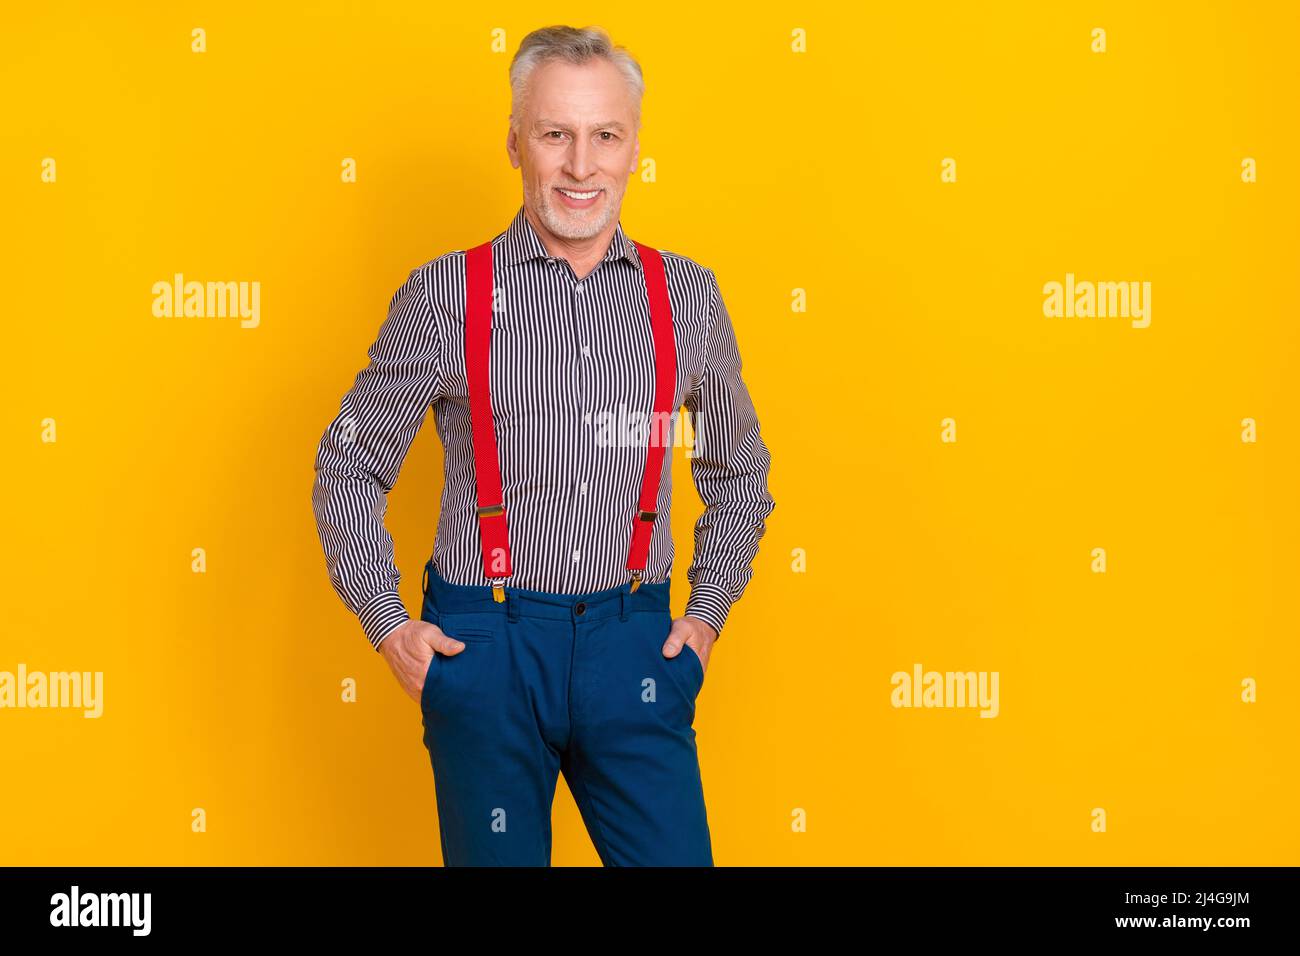 Portrait d'homme imposant gai attrayant tenant les mains dans les poches posant isolé sur fond jaune vif Banque D'Images